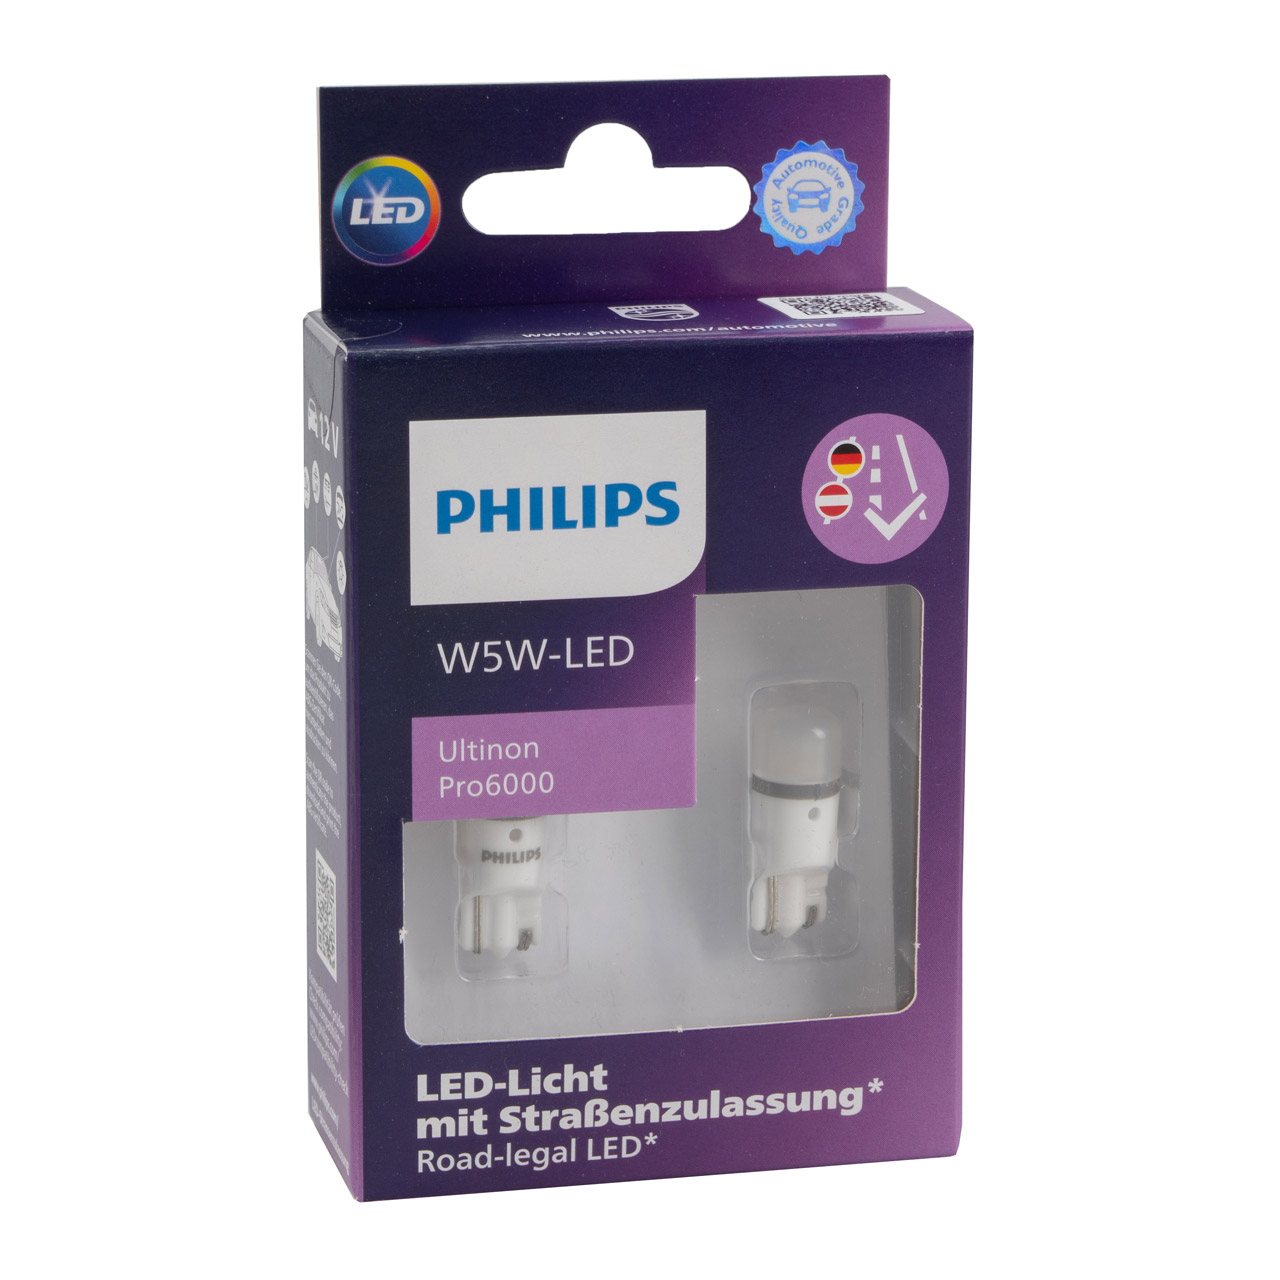 PHILIPS Halogenlampen / Glühlampen / LEDs - 11961HU60X2 